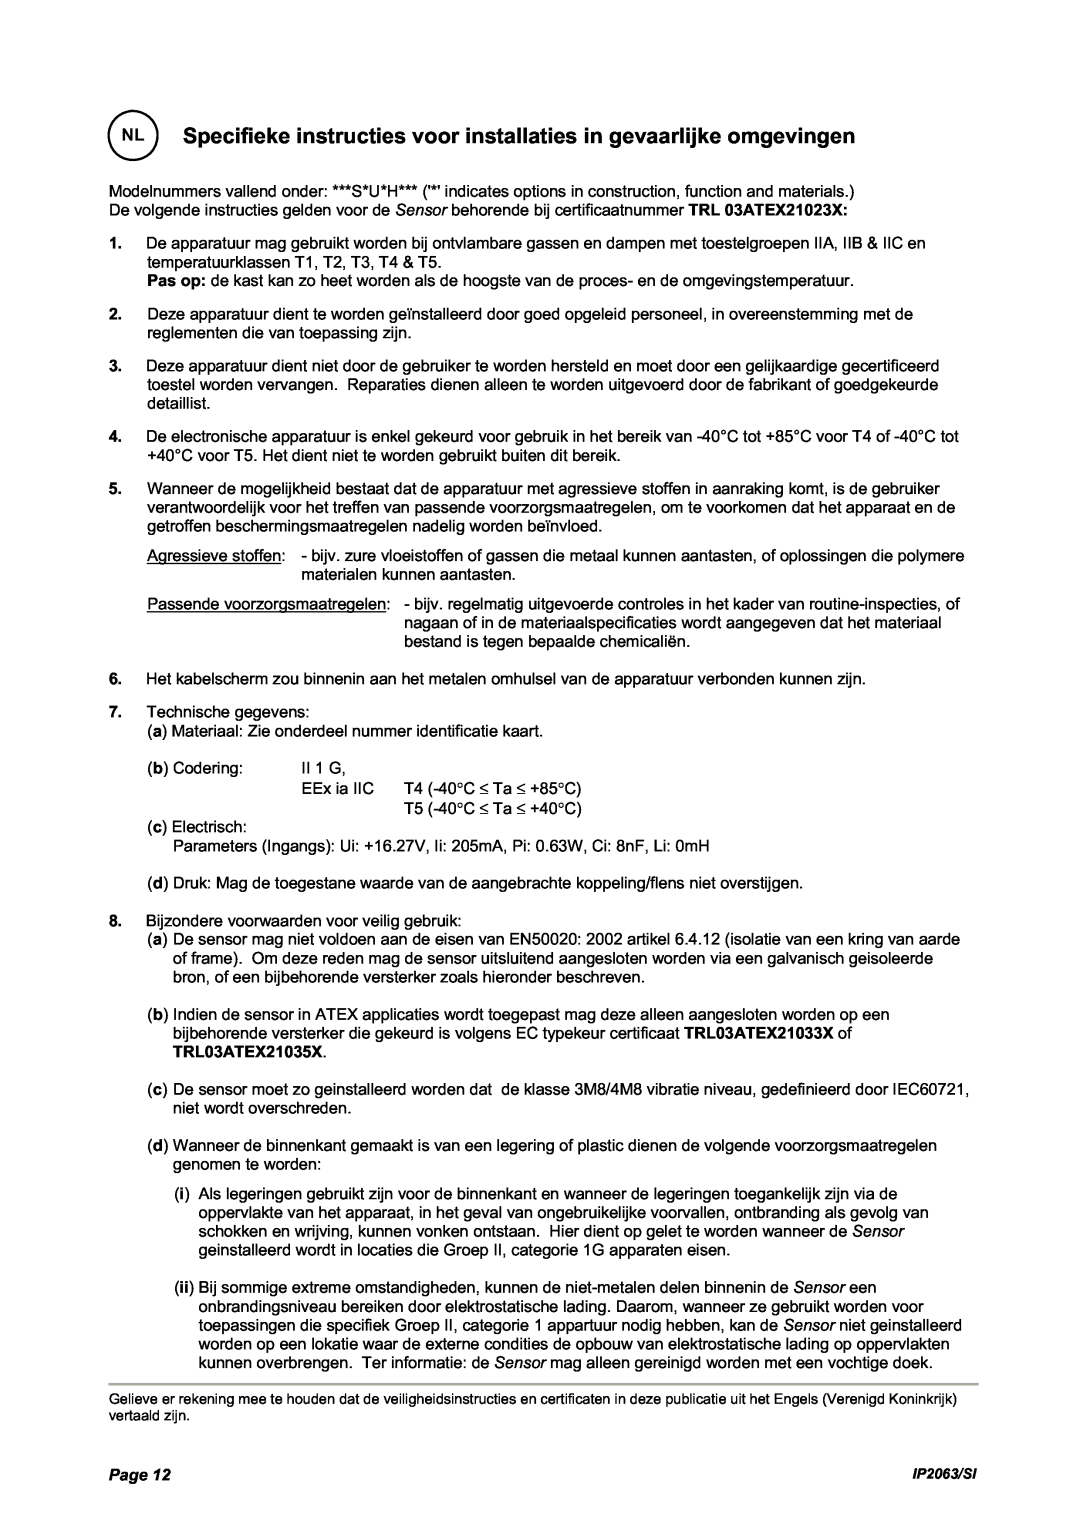 Emerson IP2063/SI manual NL Specifieke instructies voor installaties in gevaarlijke omgevingen, Page 